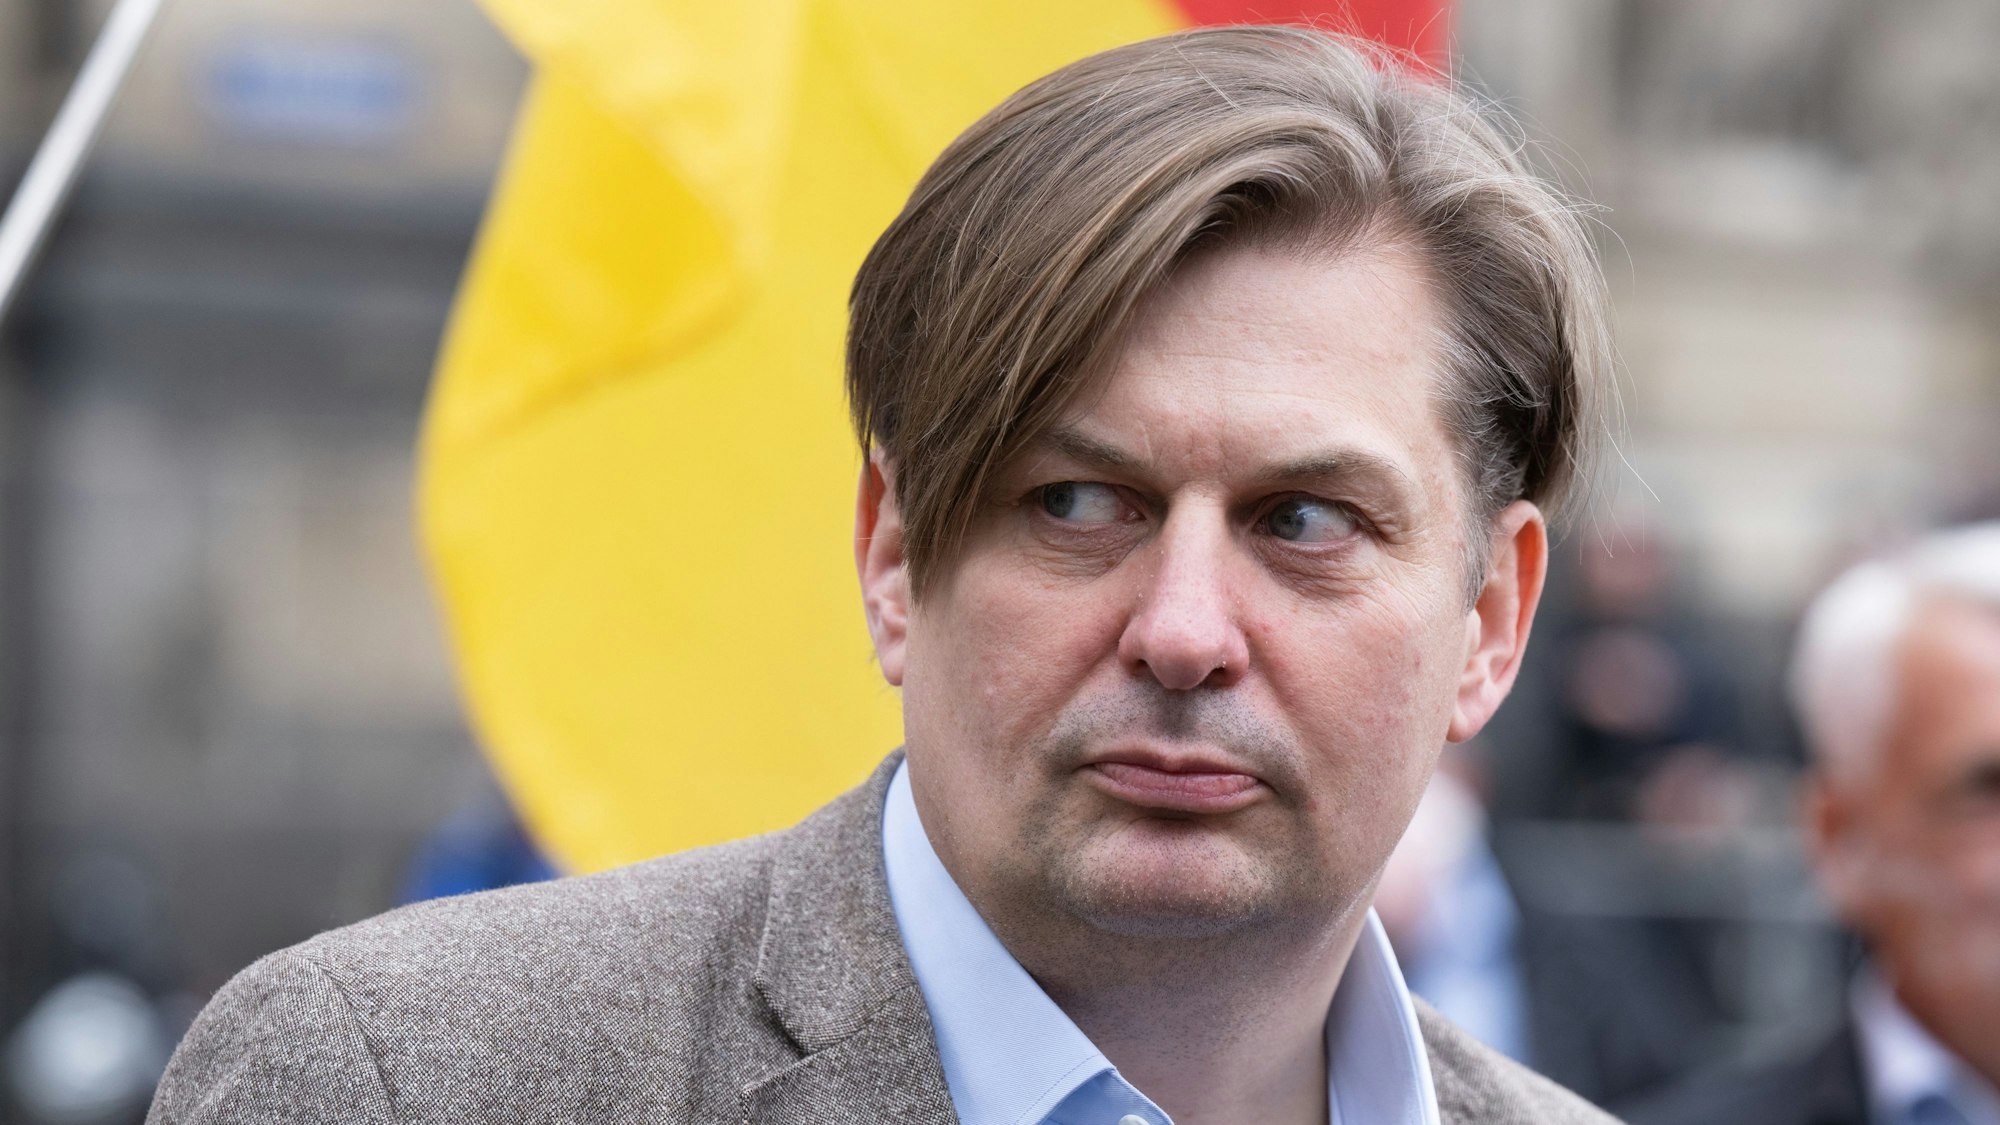 Maximilian Krah, AfD-Spitzenkandidat für die Europawahl, steht in der Kritik, nachdem ein enger Mitarbeiter am Dienstag festgenommen wurde. Jian G. soll für chinesische Nachrichtendienste spioniert haben, so die Vorwürfe. (Archivbild)